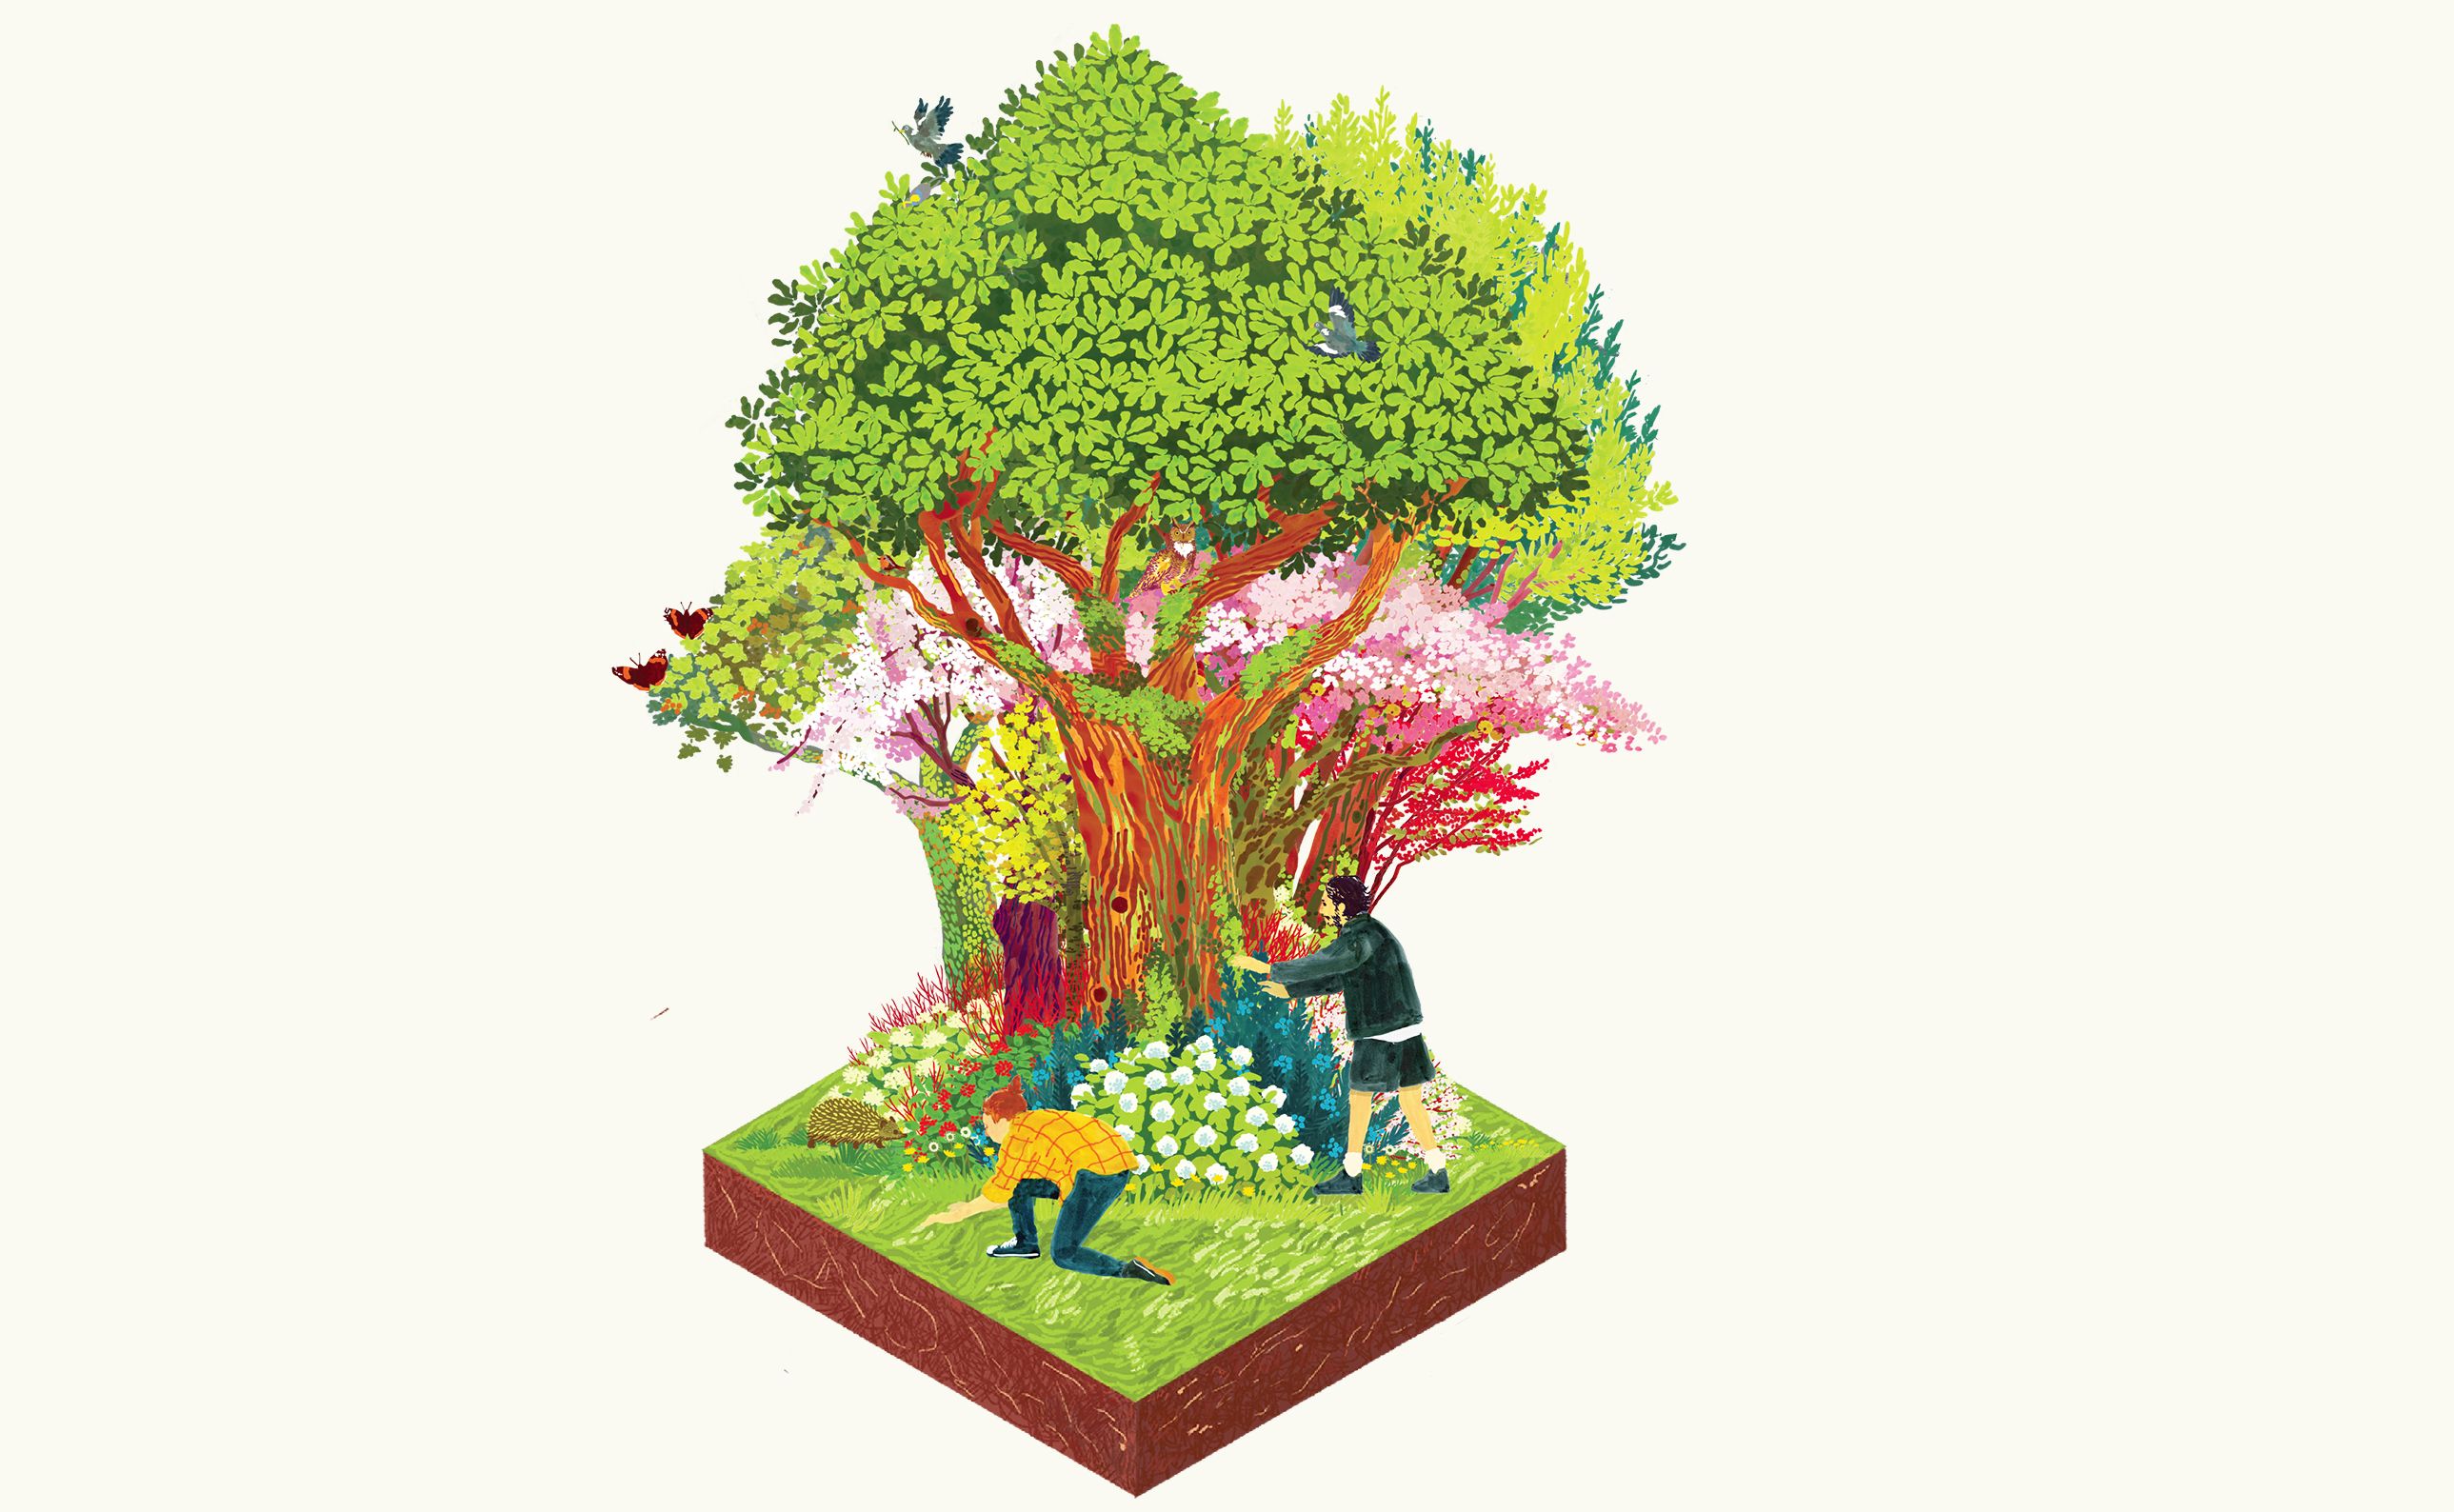 Planting trees on earth - Stock Illustration [5675011] - PIXTA